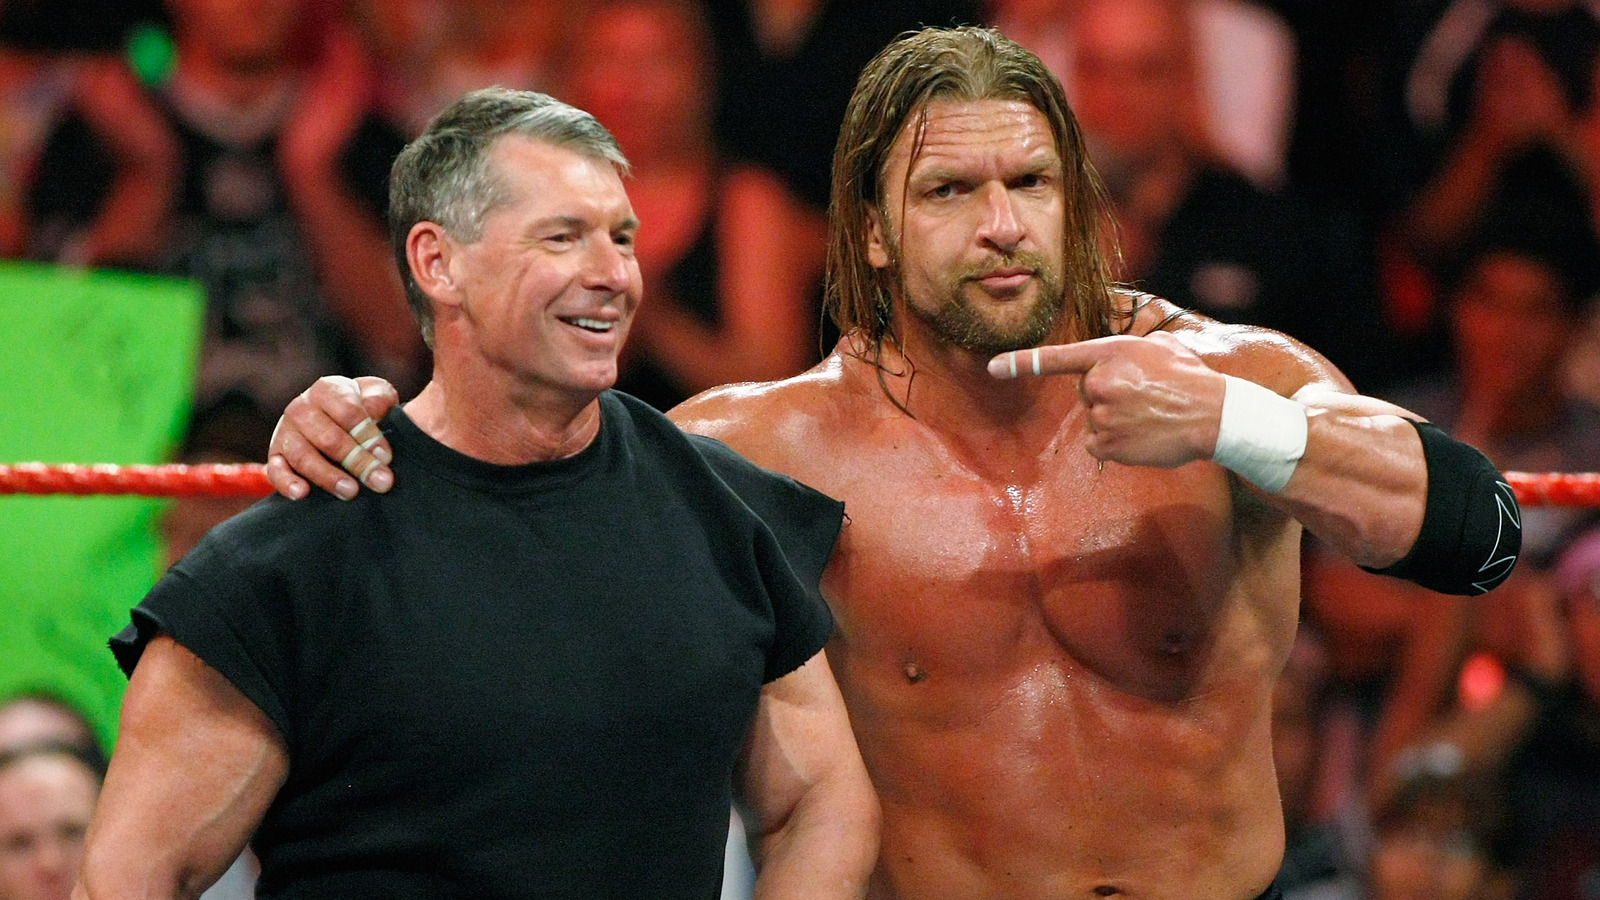 Dave Meltzer critica la respuesta de Paul Levesque de la WWE a las acusaciones contra Vince McMahon